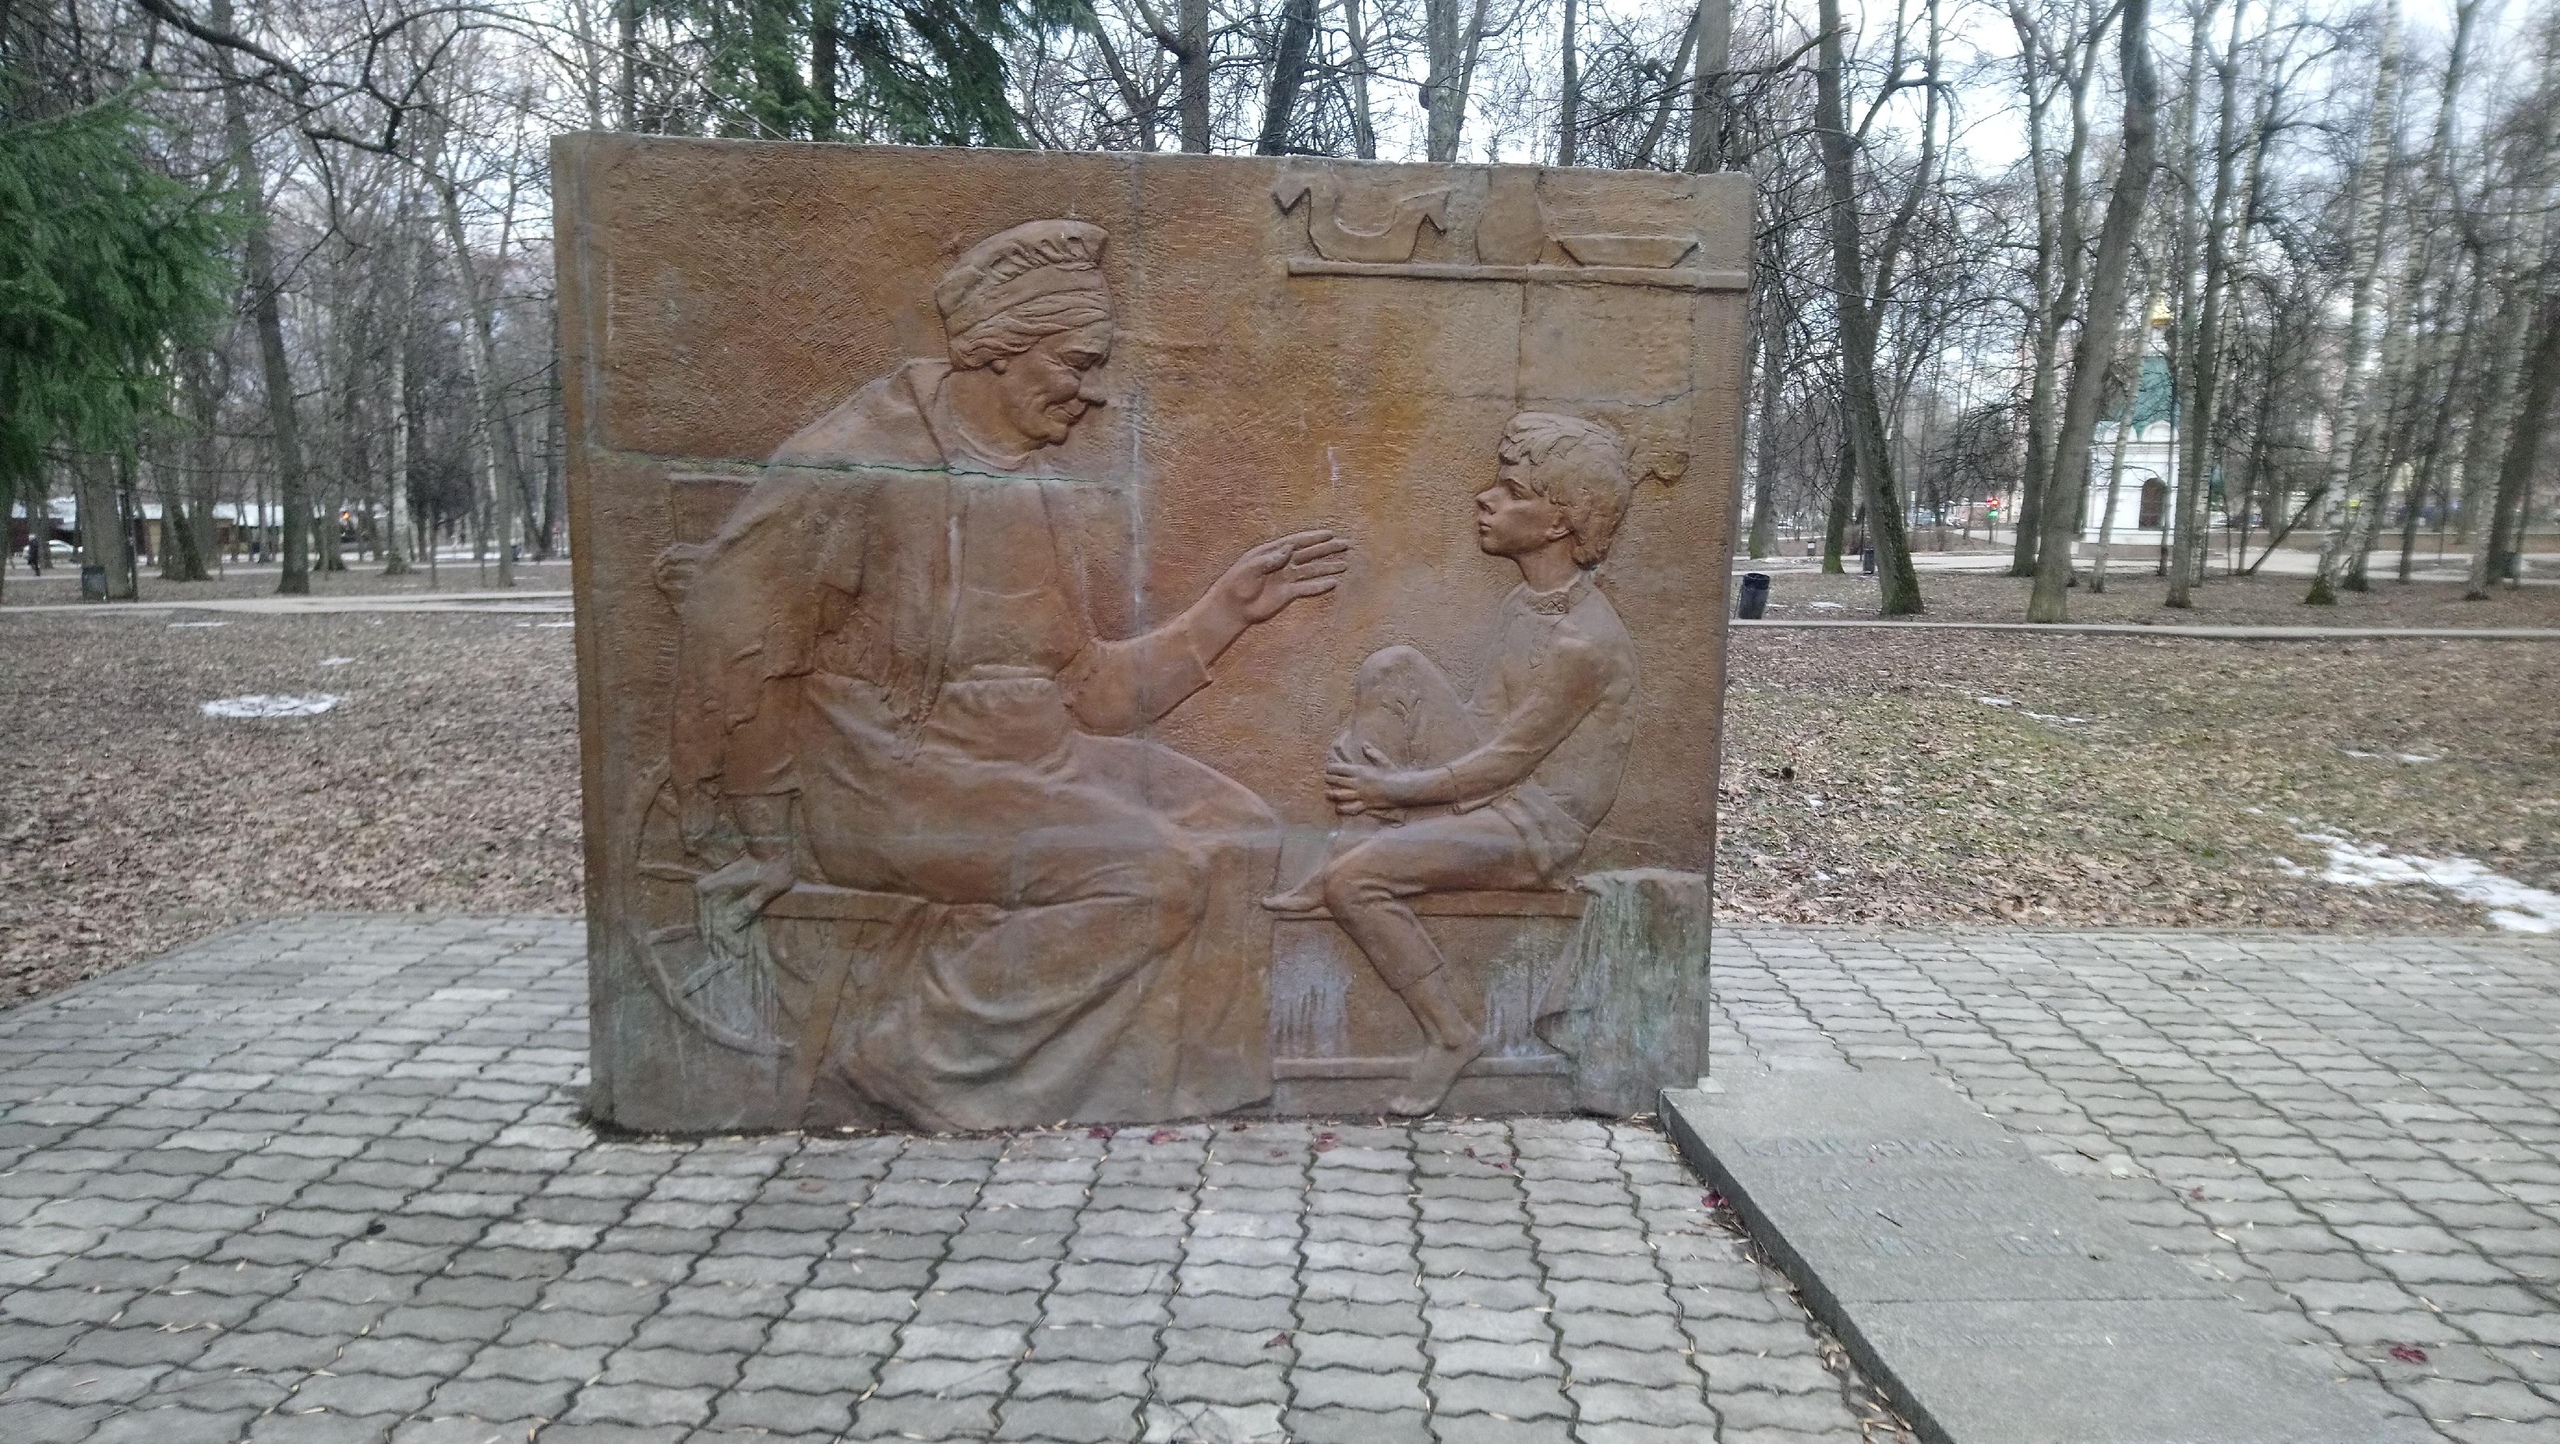 Памятник Кашириной Акулине Ивановне в Нижнем Новгороде